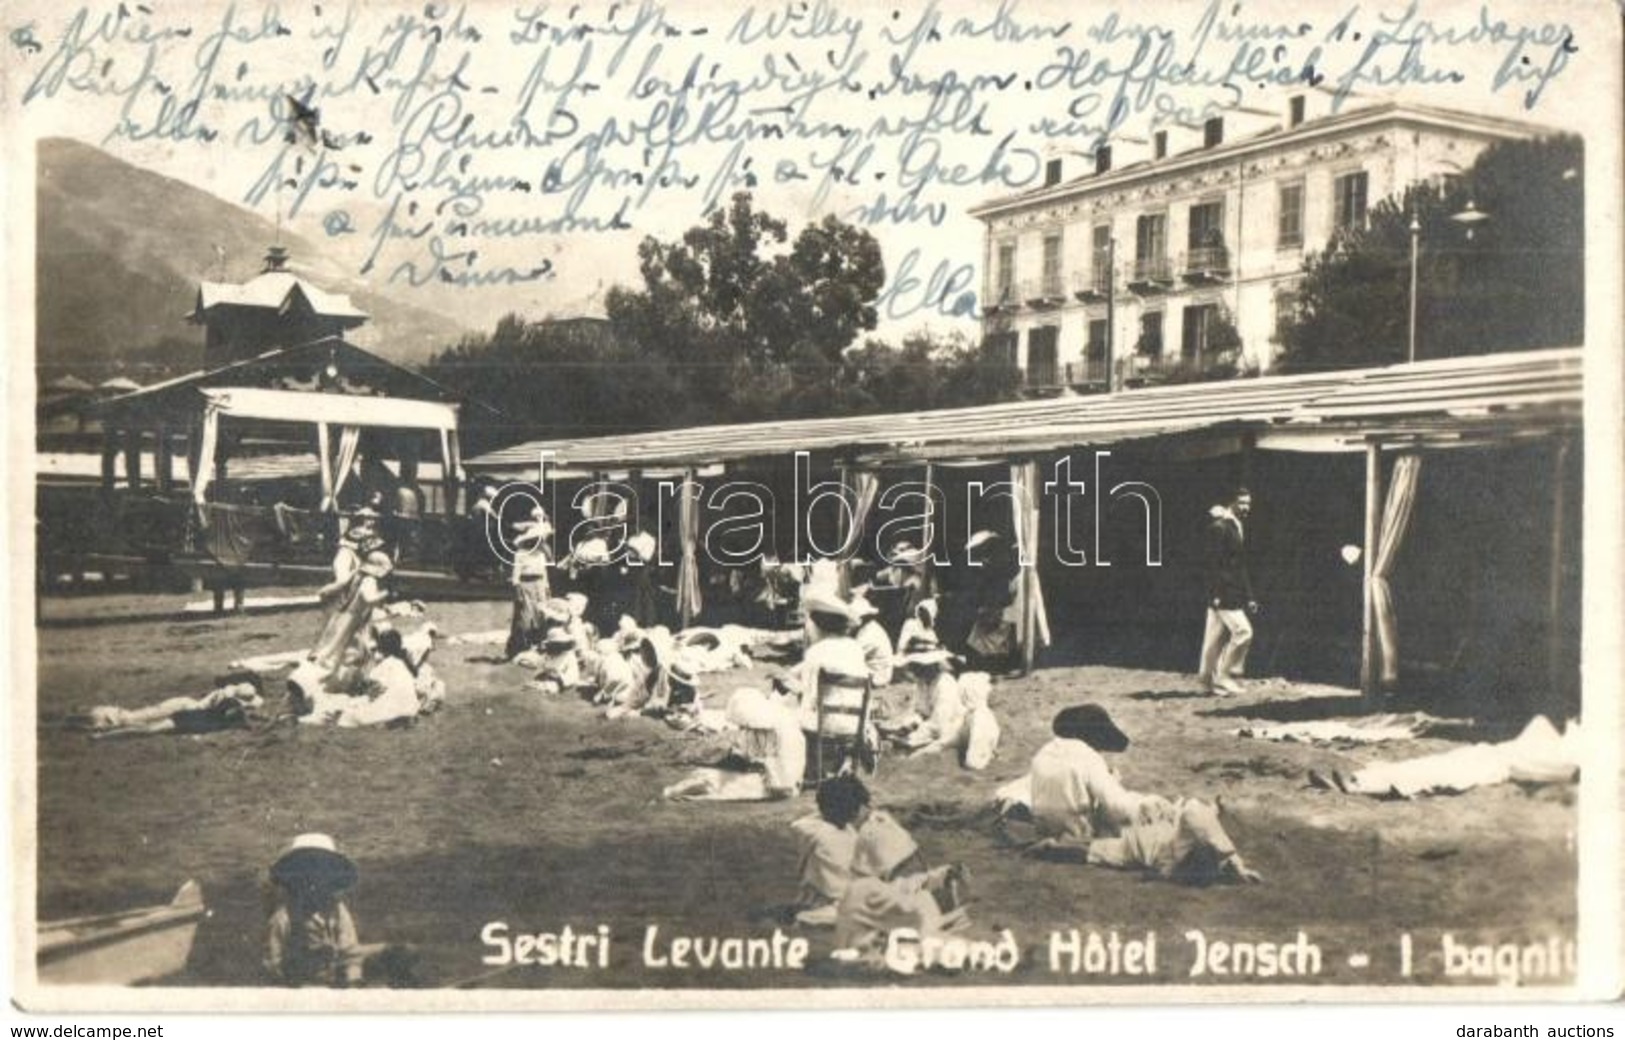 T2 Sestri Levante, Grand Hotel Jensch, Beach, Sunbathing - Unclassified